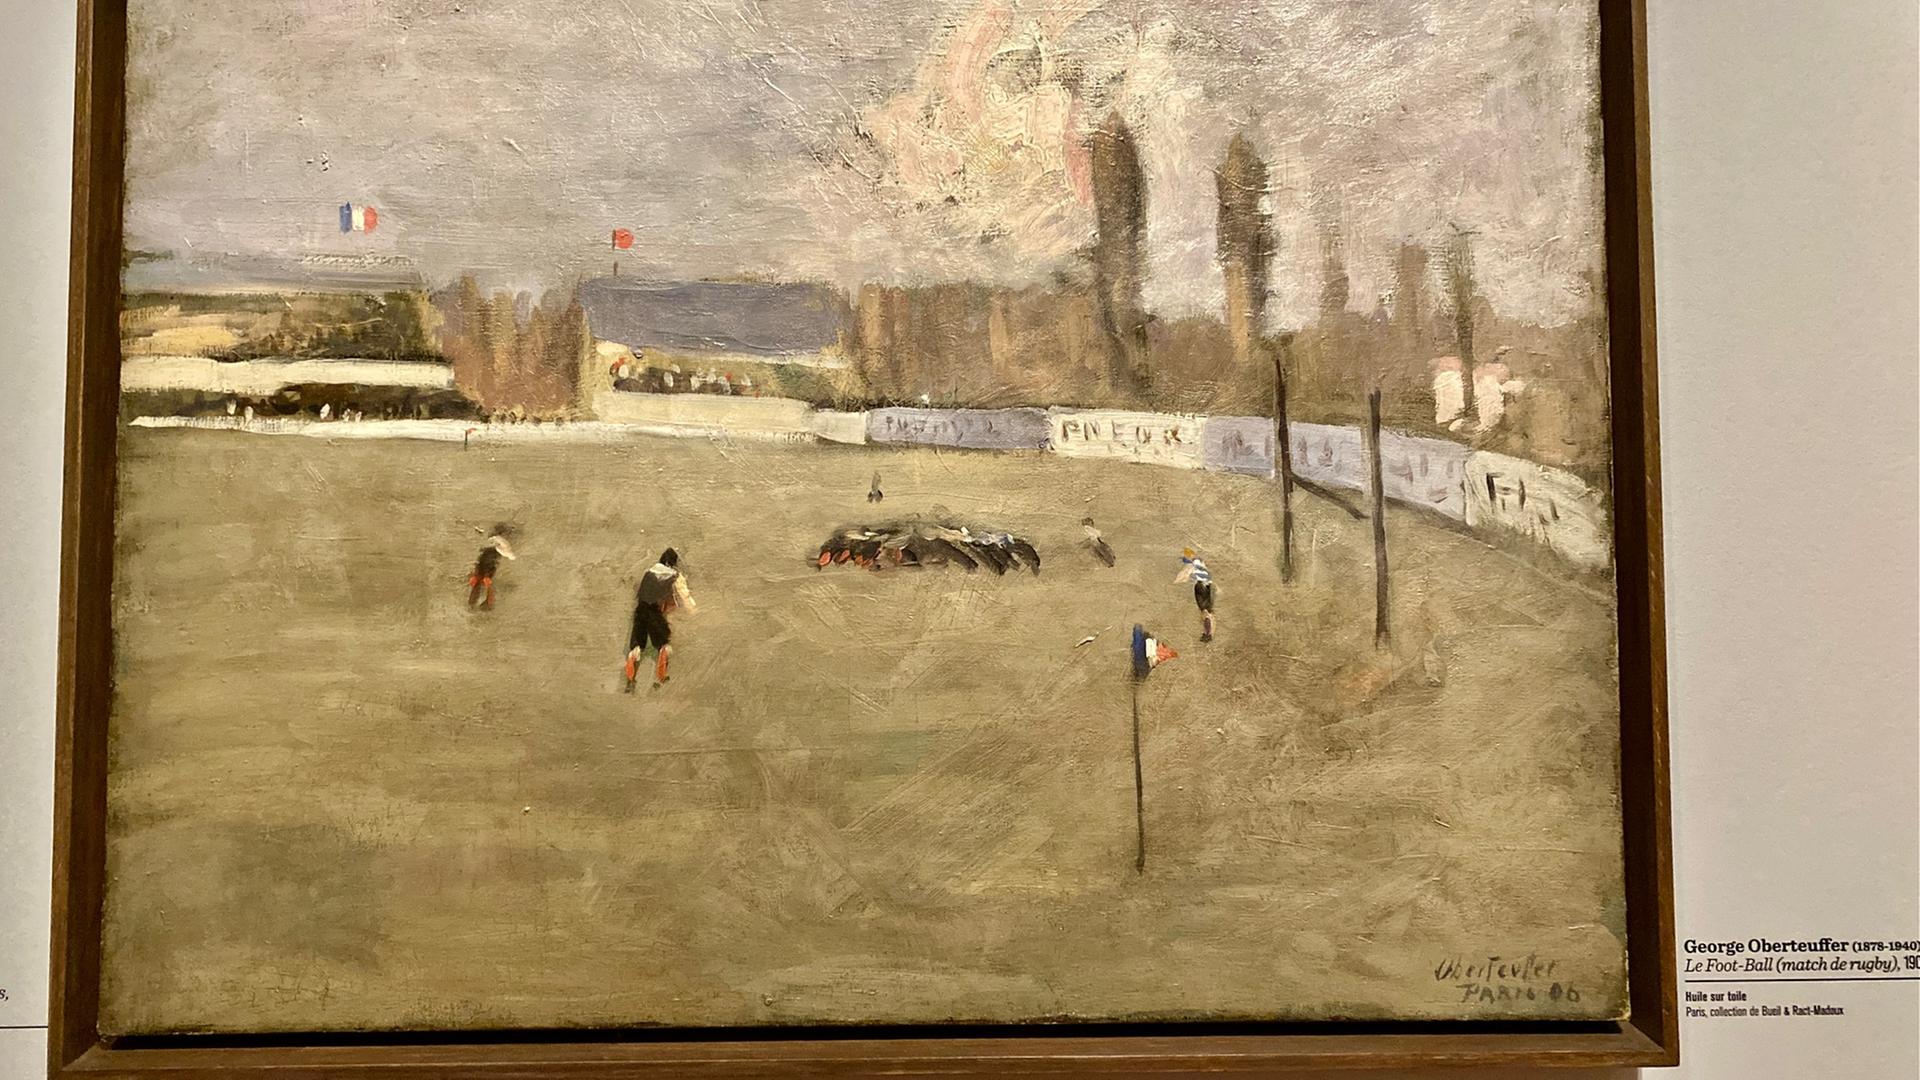 Die Fotografie des Gemäldes zeigt ein Rugby Spiel. Männer in Trikots ringen miteinander, im HIntergrund weht die französische Flagge und im HIntergrund rauchen Schloten. 